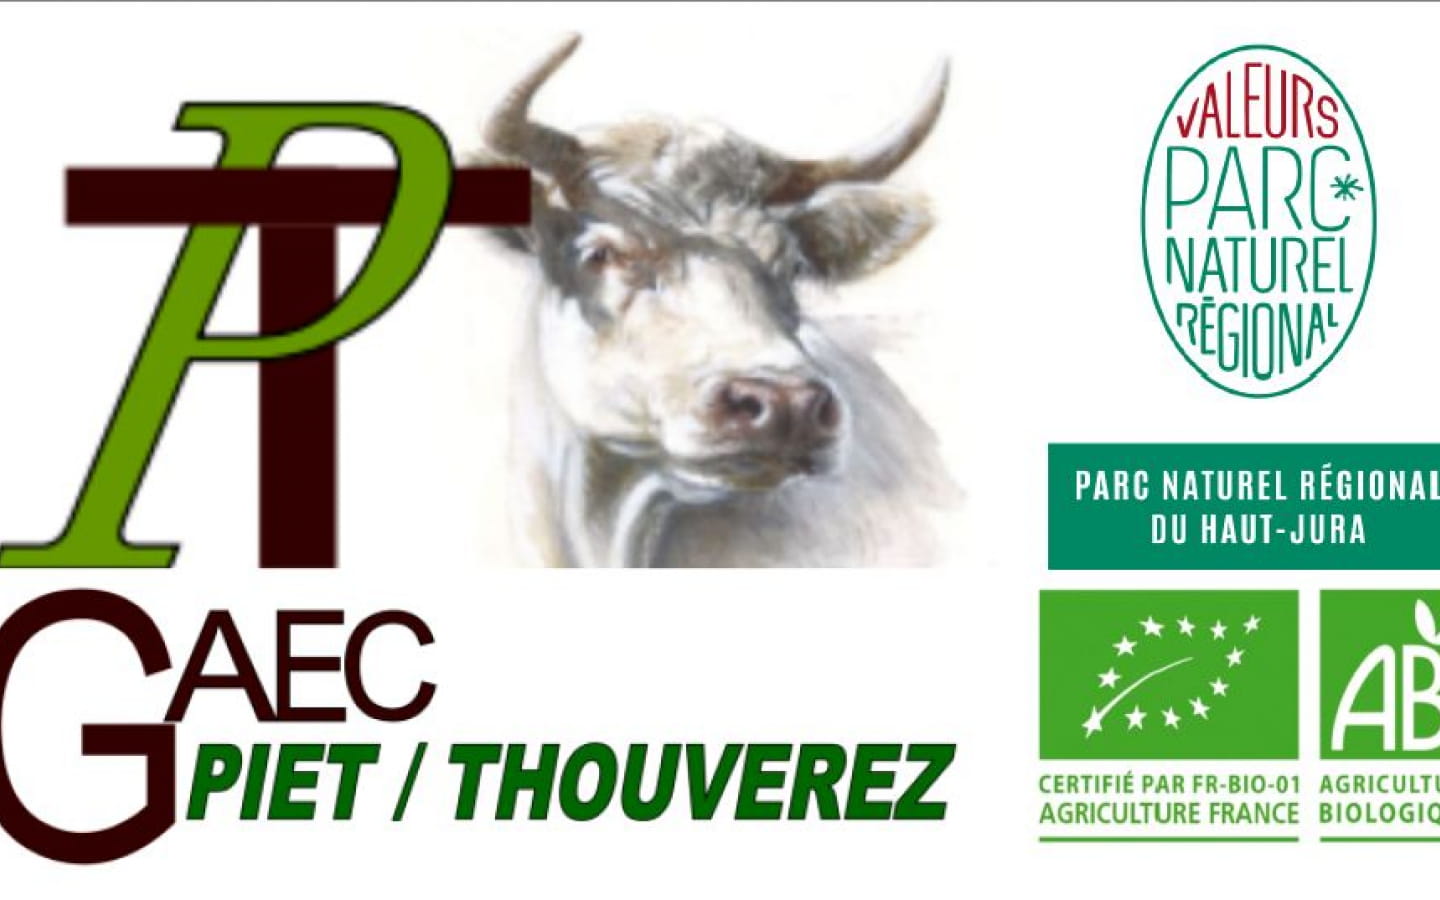 GAEC Piet / Thouverez